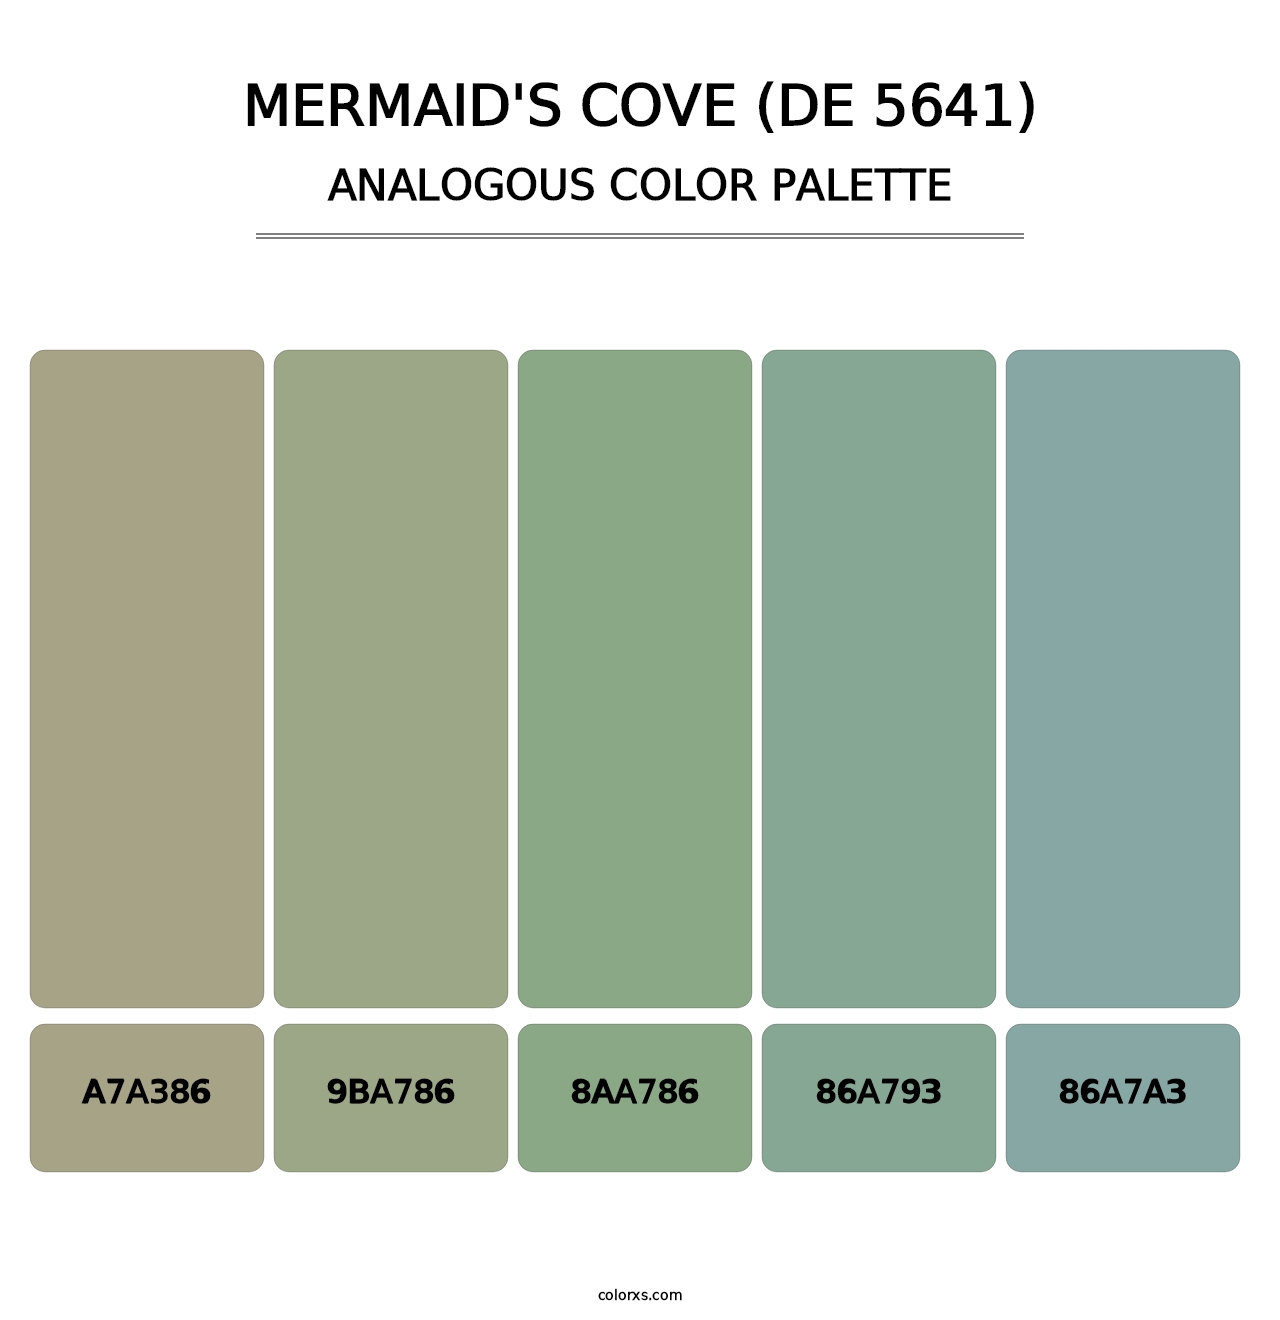 Mermaid's Cove (DE 5641) - Analogous Color Palette